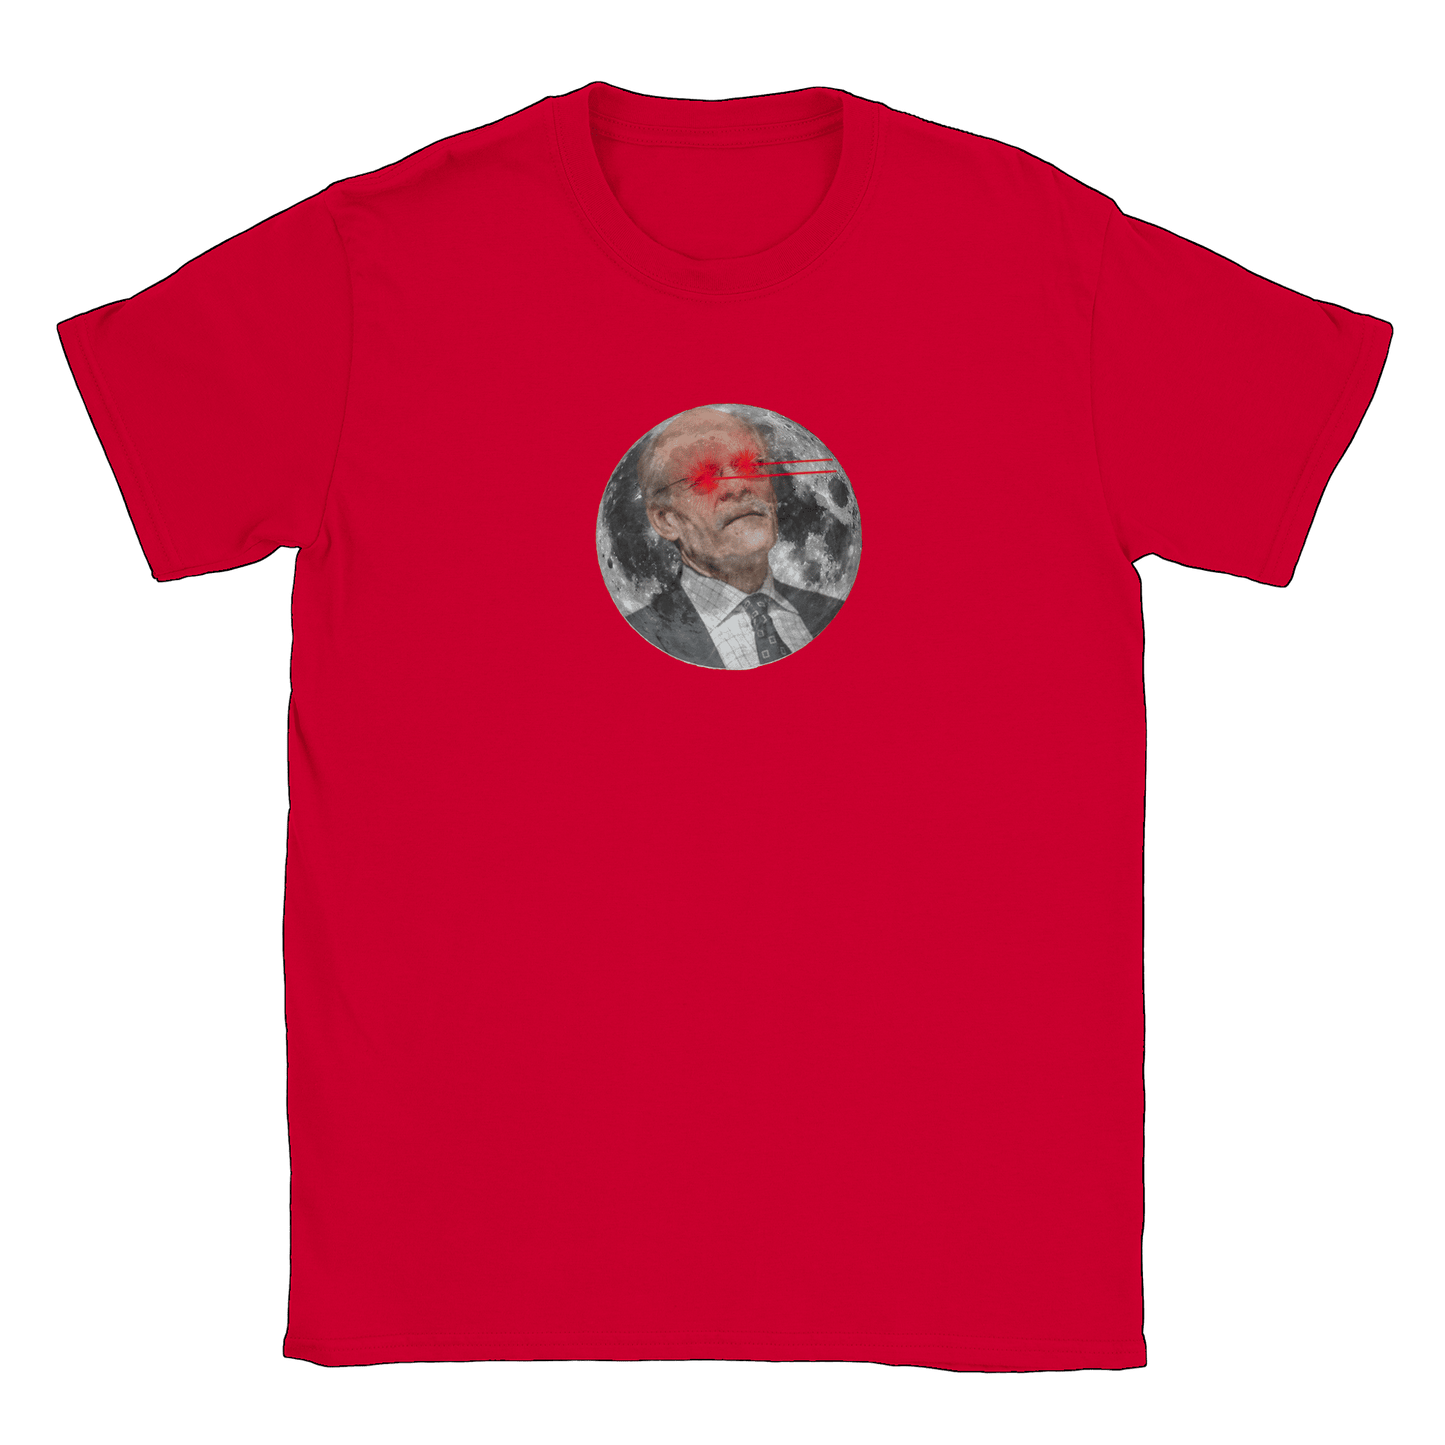 Riksbankschef till månen - T-shirt Röd